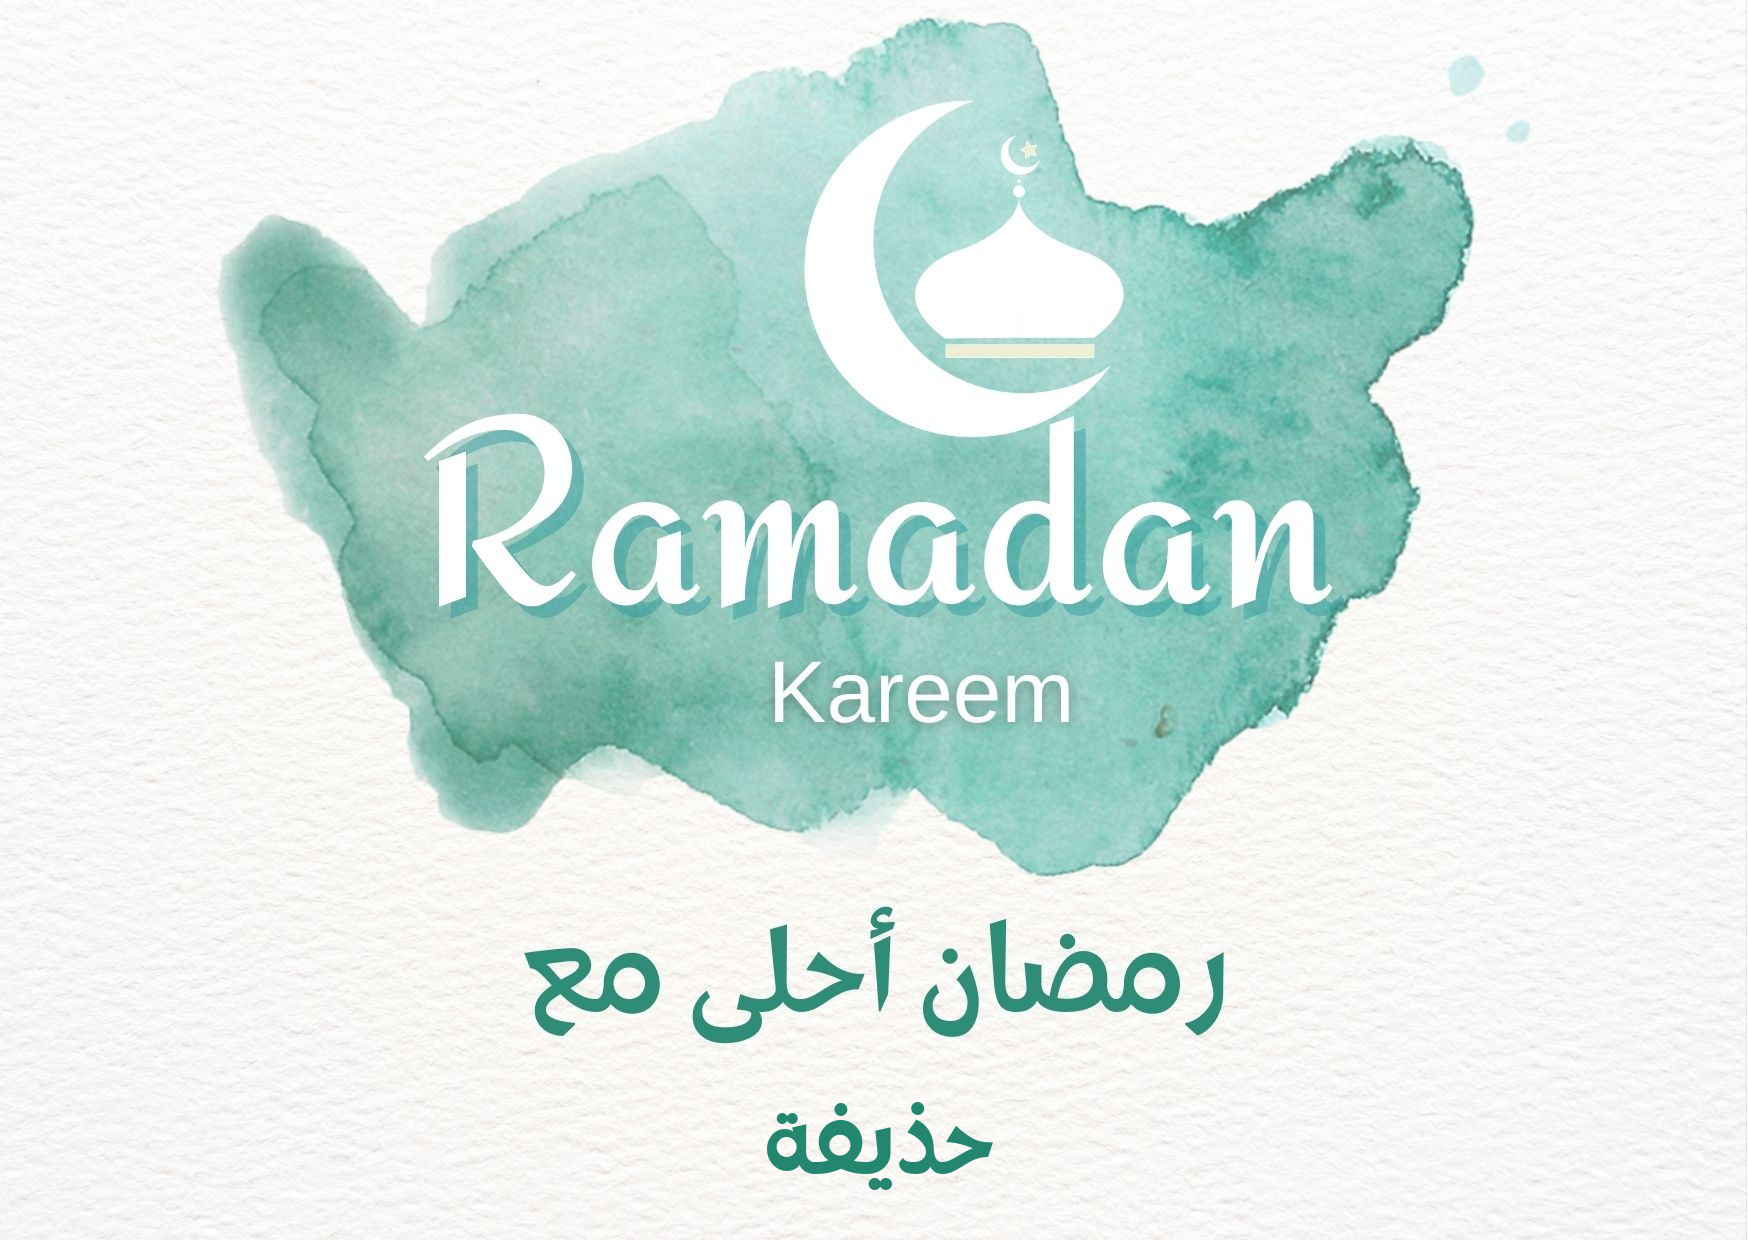 اسم حذيفة على صورة ضمن خدمة تصميم رمضان احلي مع اسمك